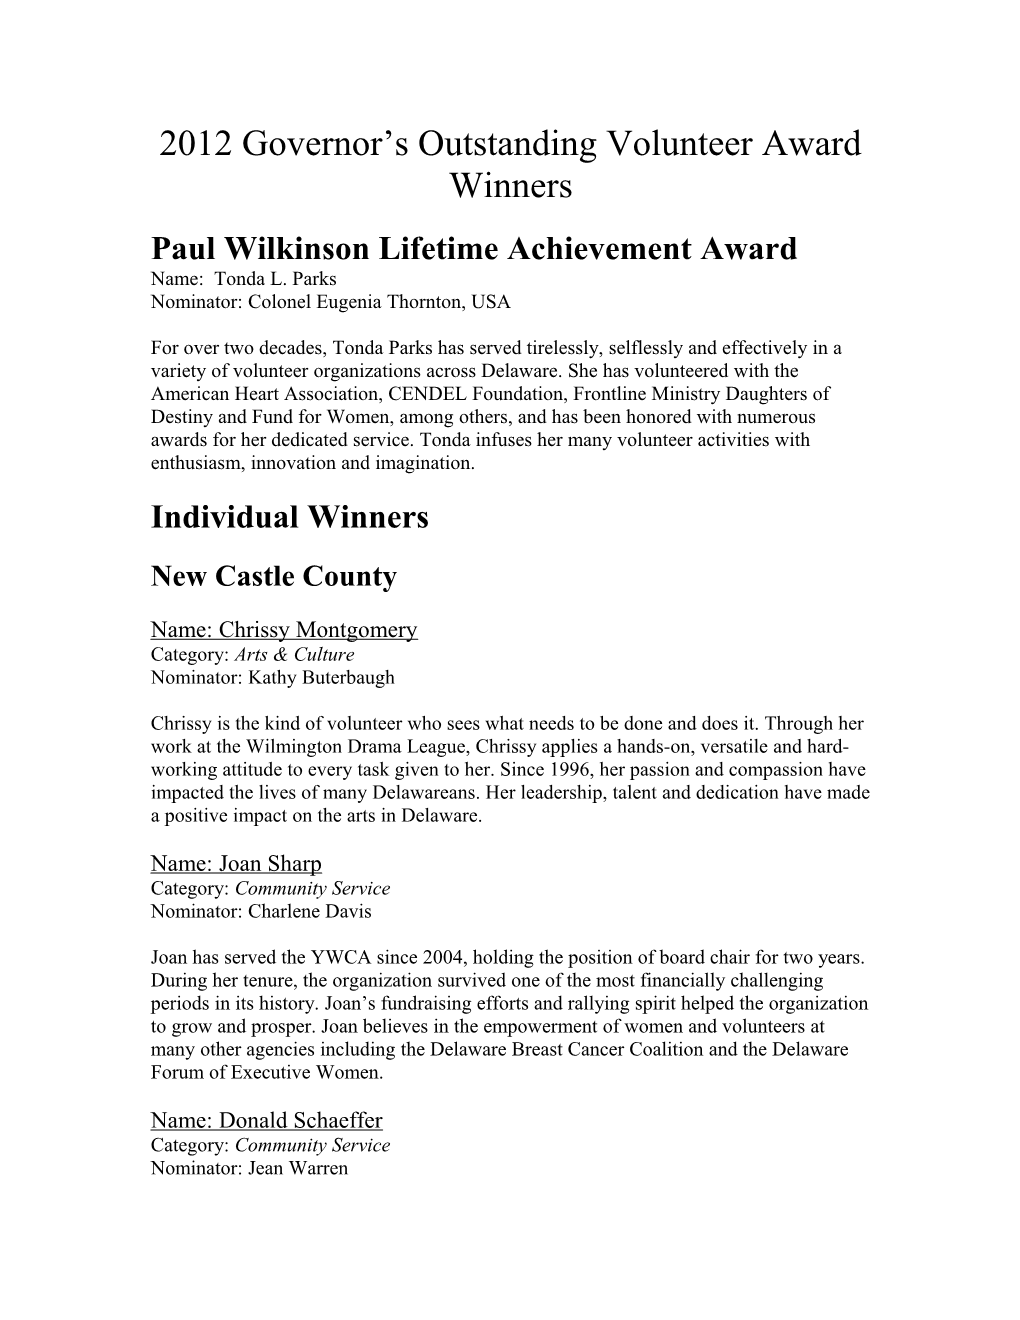 2011 Governor S Outstanding Volunteer Award Winners